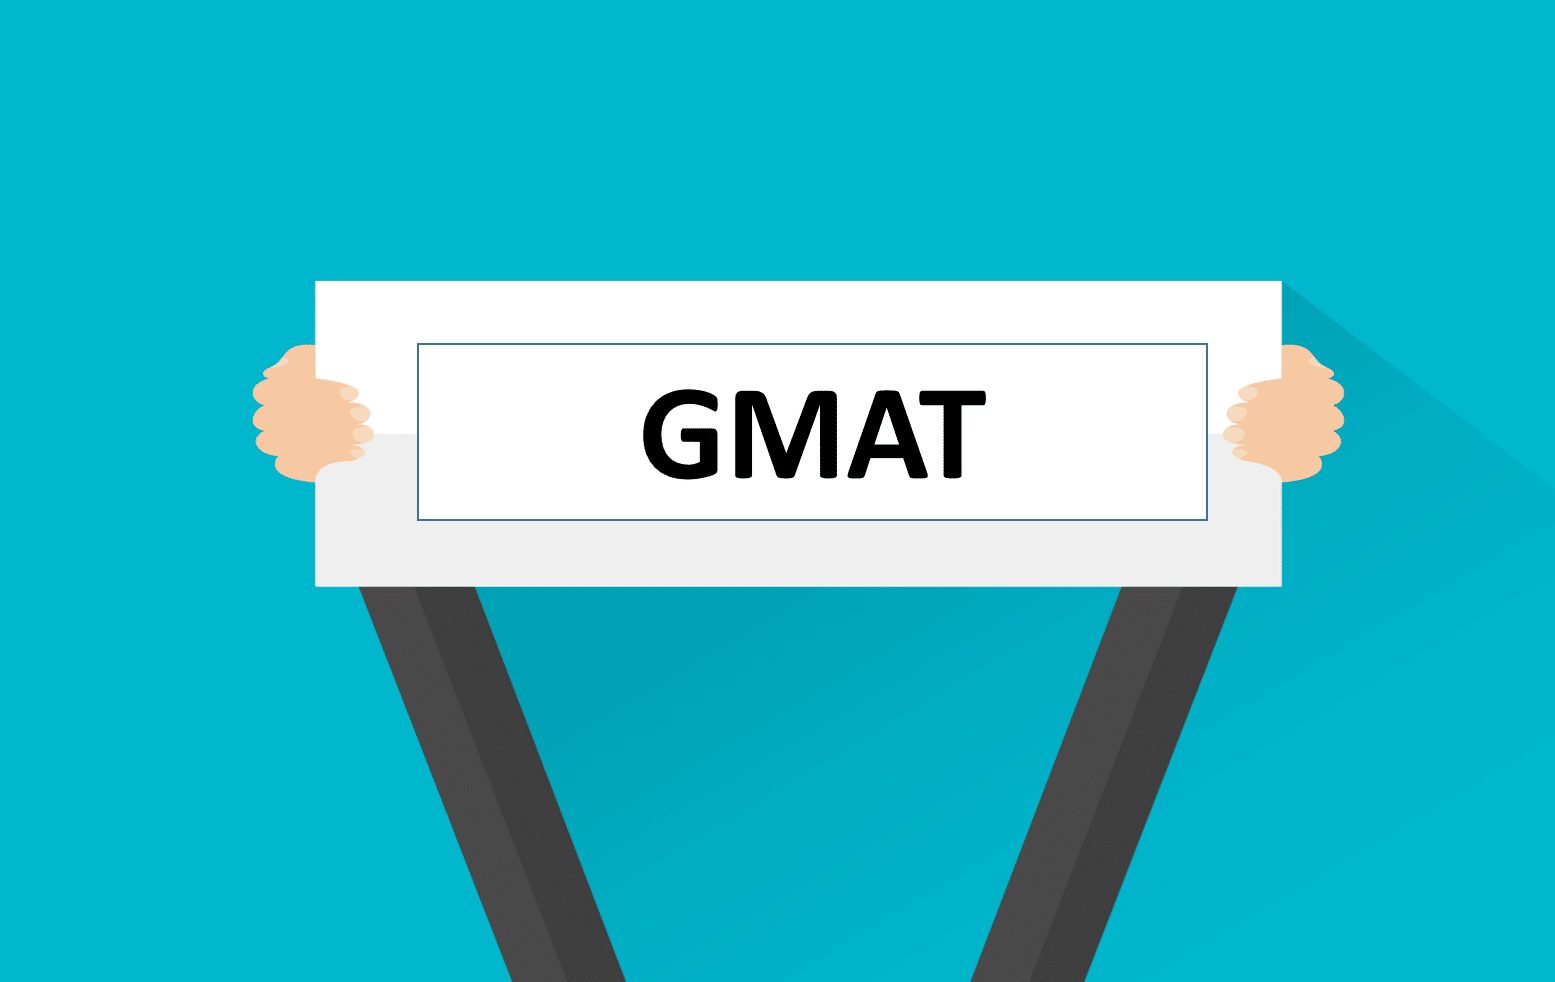 GMAT là bài thi kiểm tra dành cho ứng viên muốn học thạc sĩ, tiến sĩ ngành quản trị kinh doanh, tài chính, kế toán